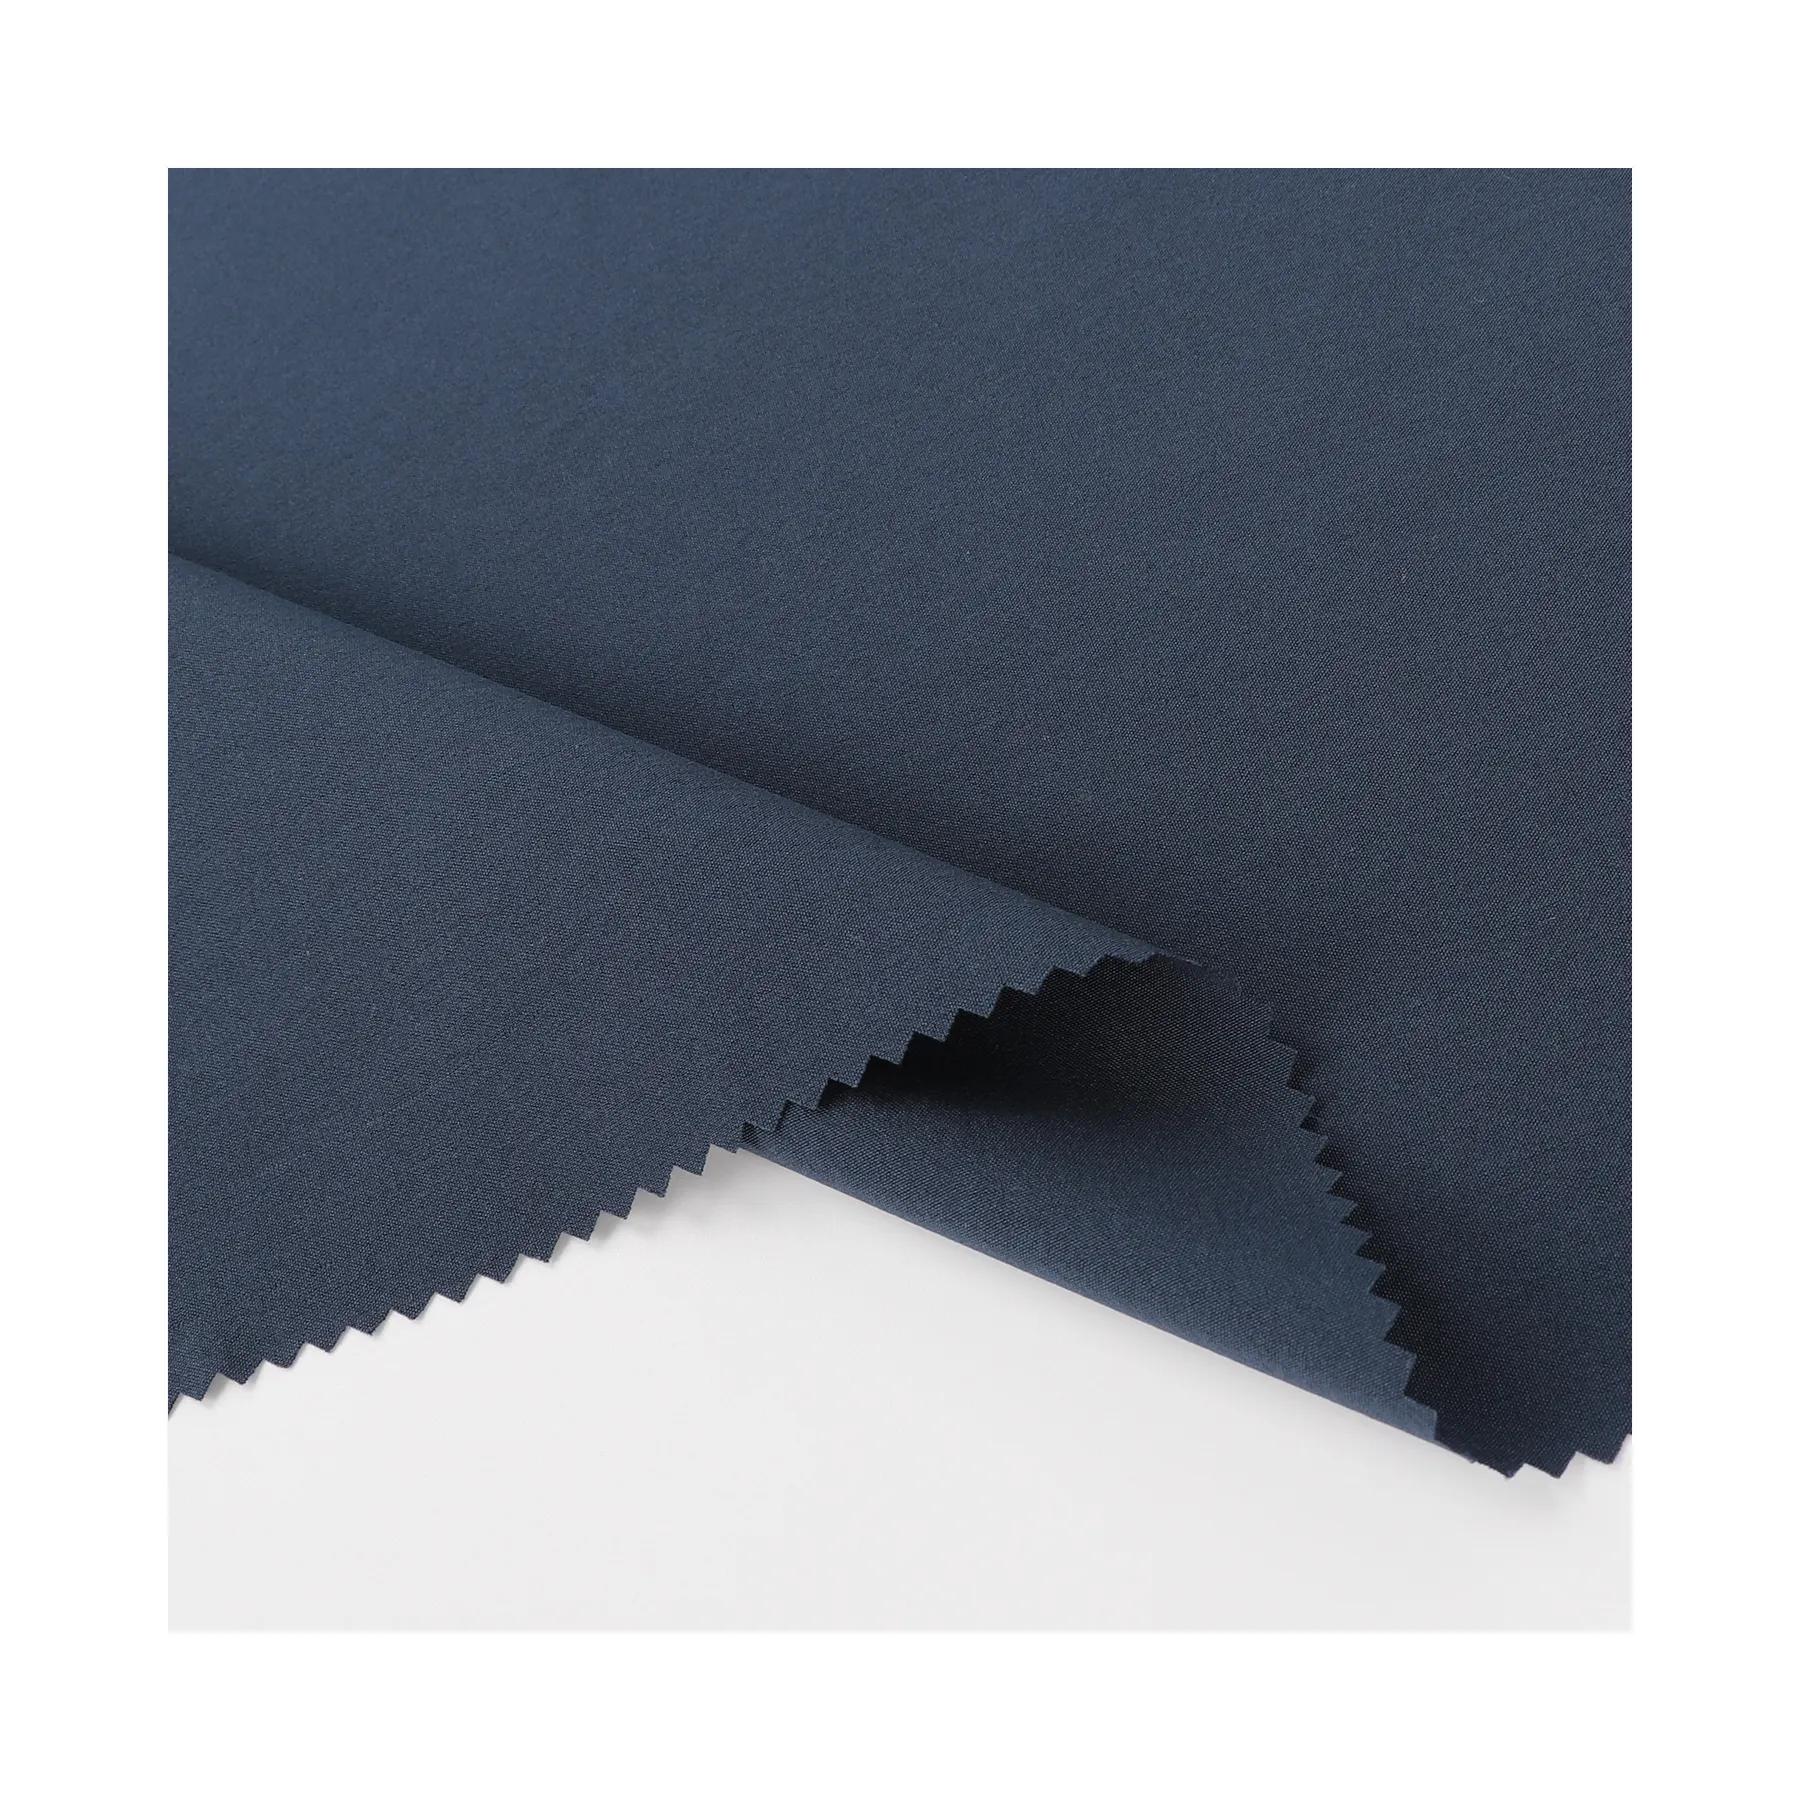 Poliéster ligero suave seco elástico de 4 vías liso para abrigo para pantalones Recyle transpirable cómodo tejido antibacteriano